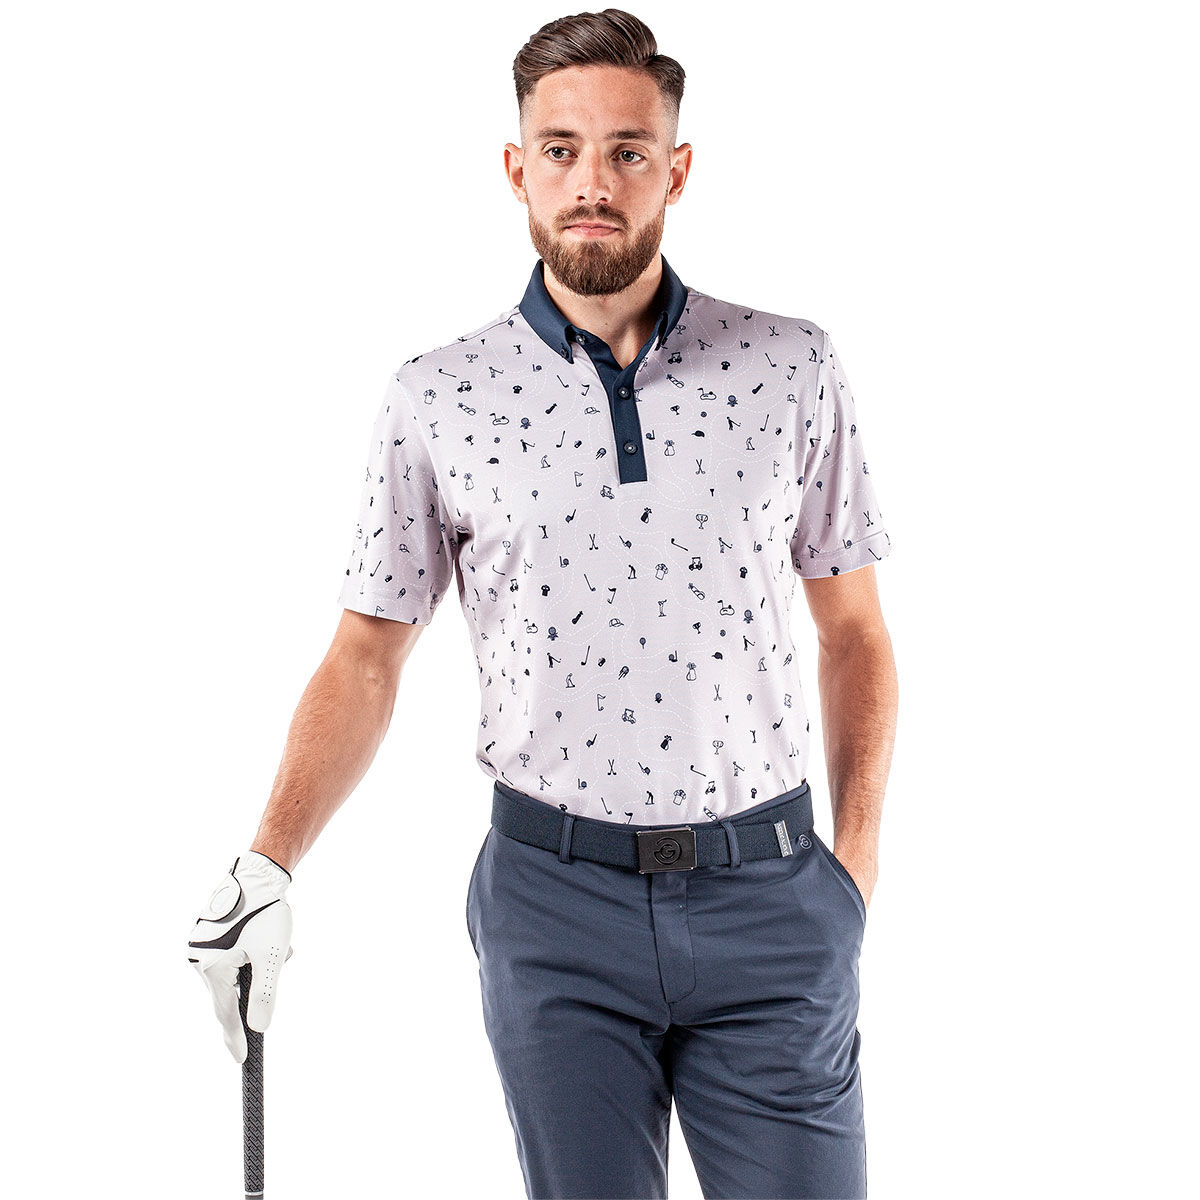 Galvin Green Men's Miro Golf Polo Shirt, Mens, Cool grey/navy, Small | American Golf von Galvin Green